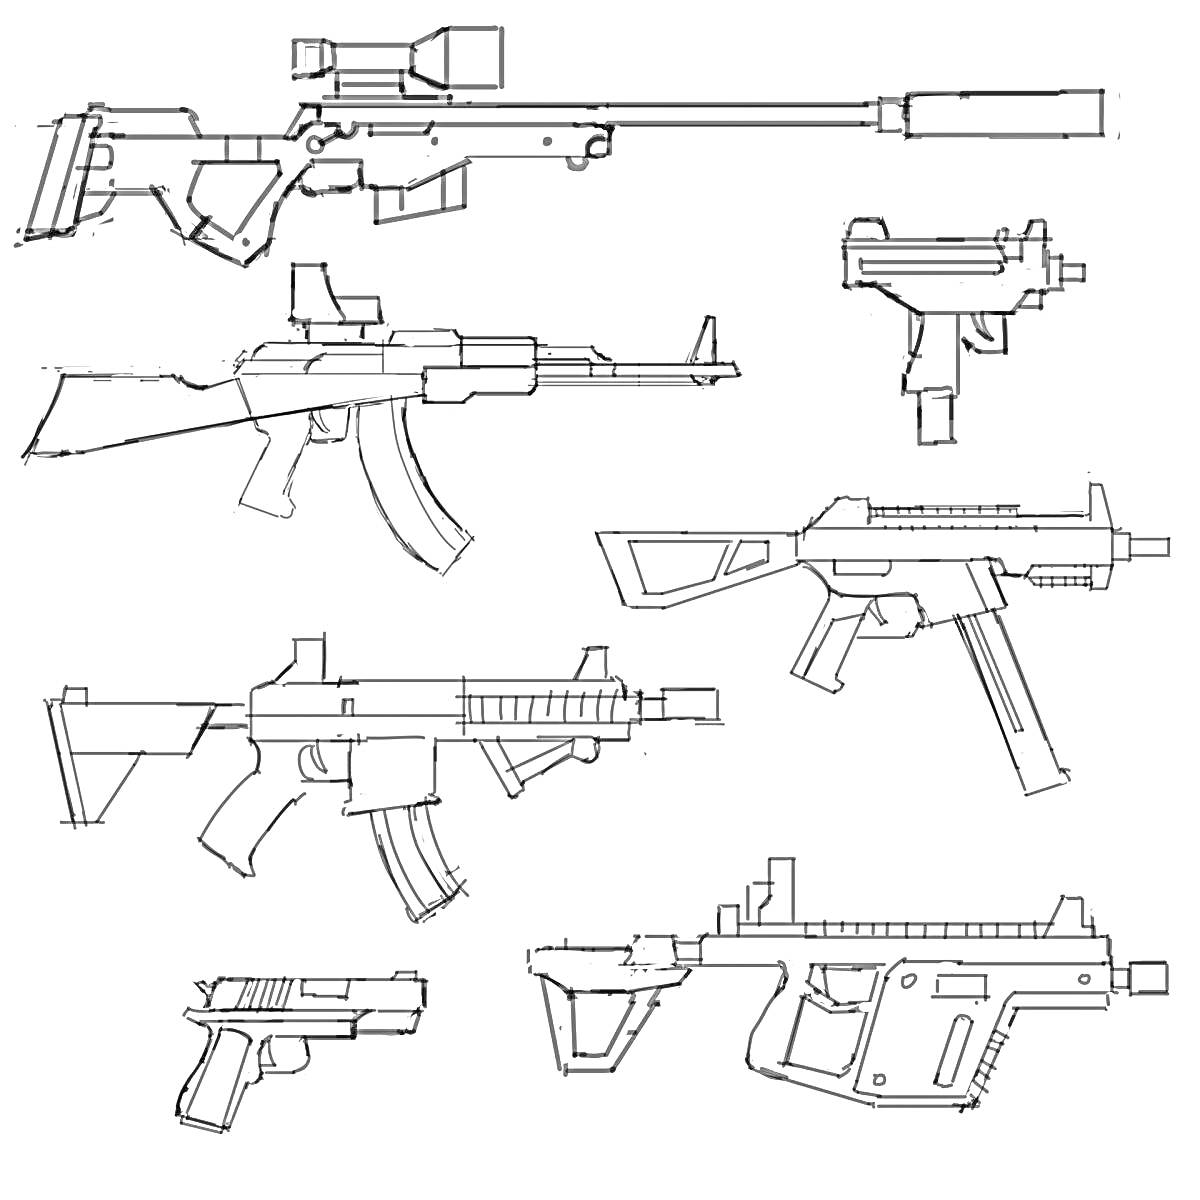 Оружие из PUBG - винтовка с прицелом и глушителем, пистолет-пулемет, автоматическая винтовка, карабин, штурмовая винтовка, пистолет, пулемет с прикладом